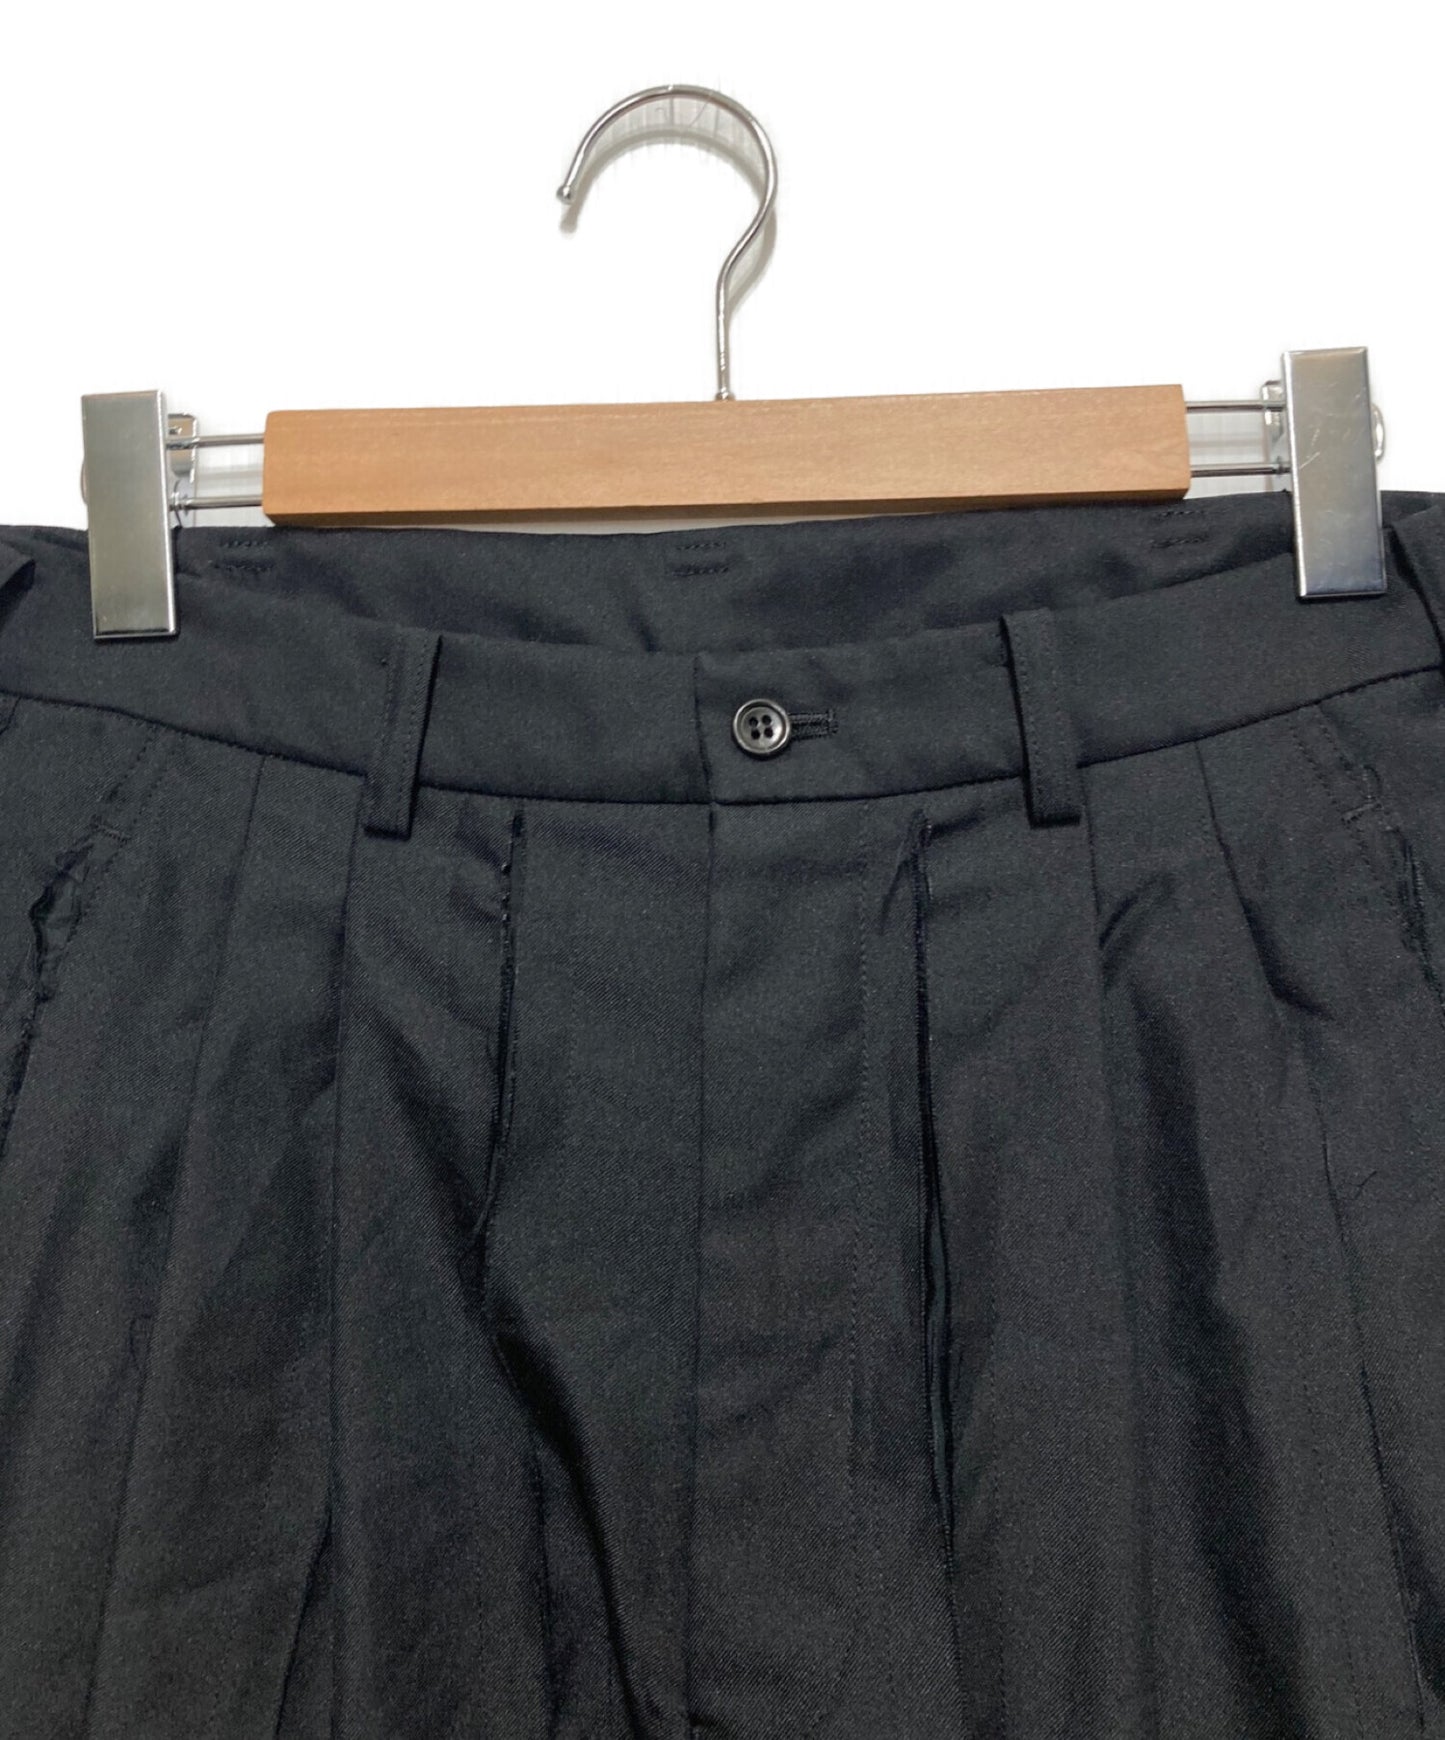 Black Comme des Garcons Shorts 1C-P033